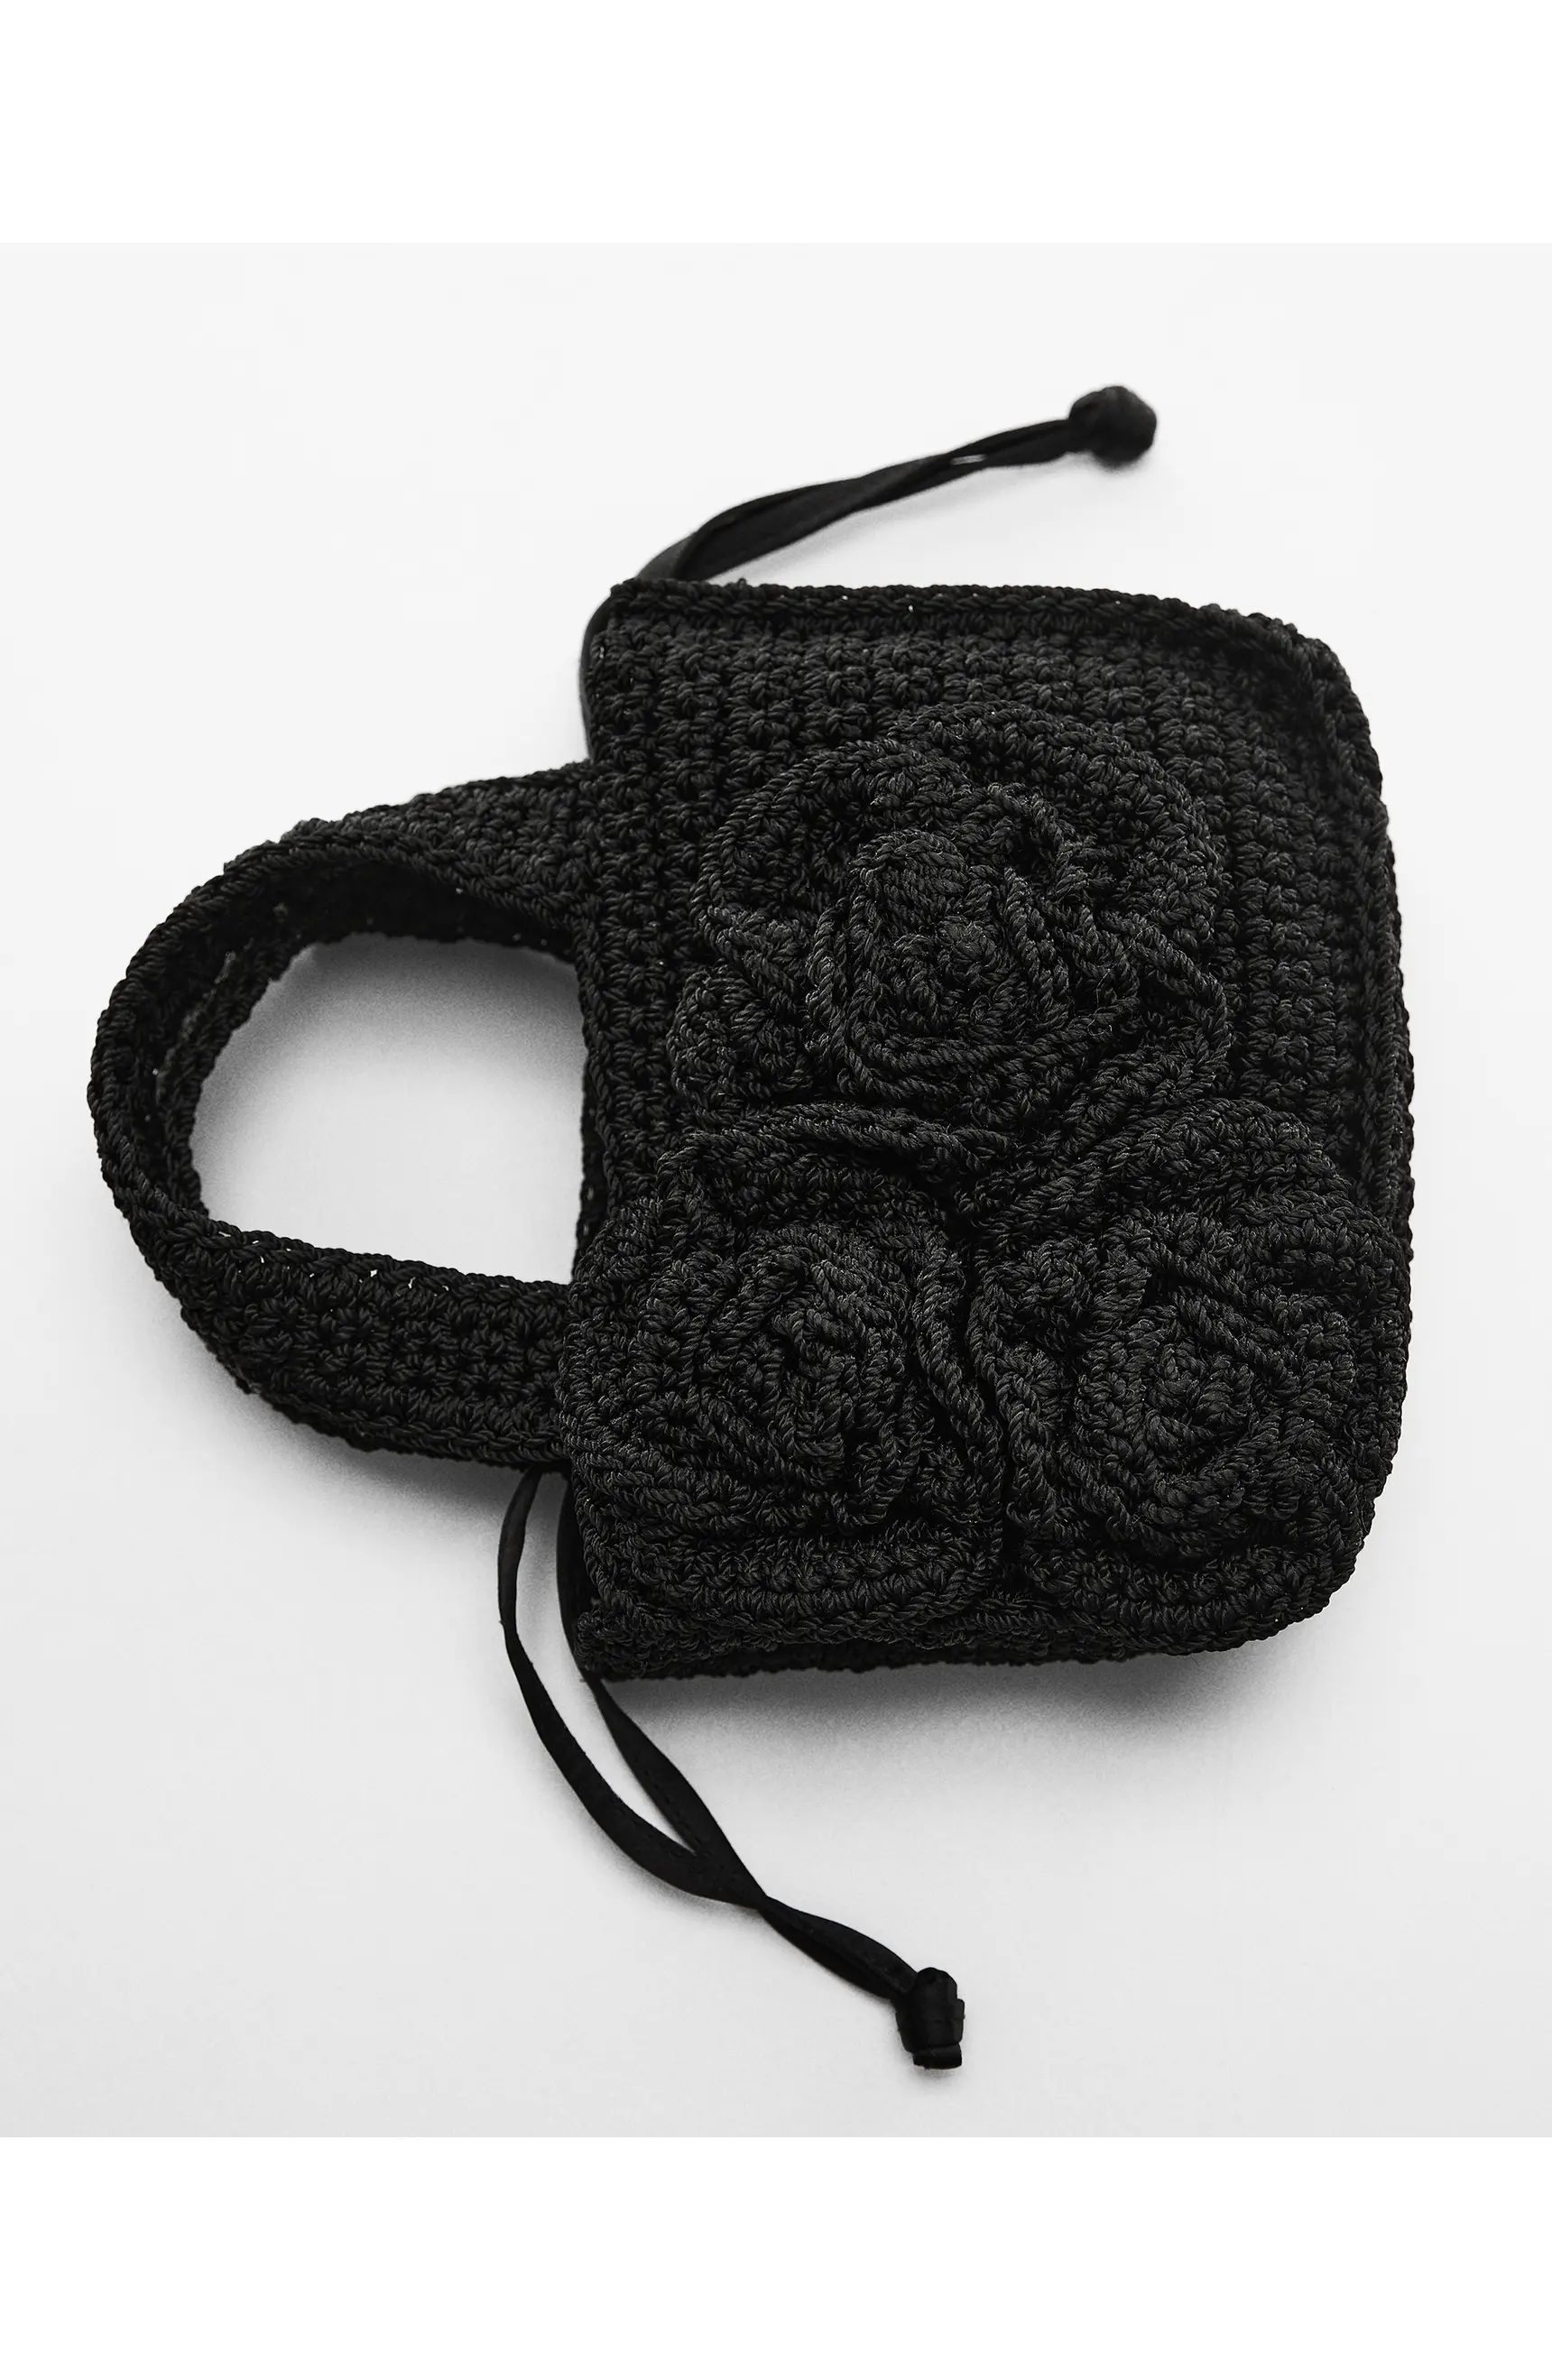 Crochet Top Handle Bag | Nordstrom